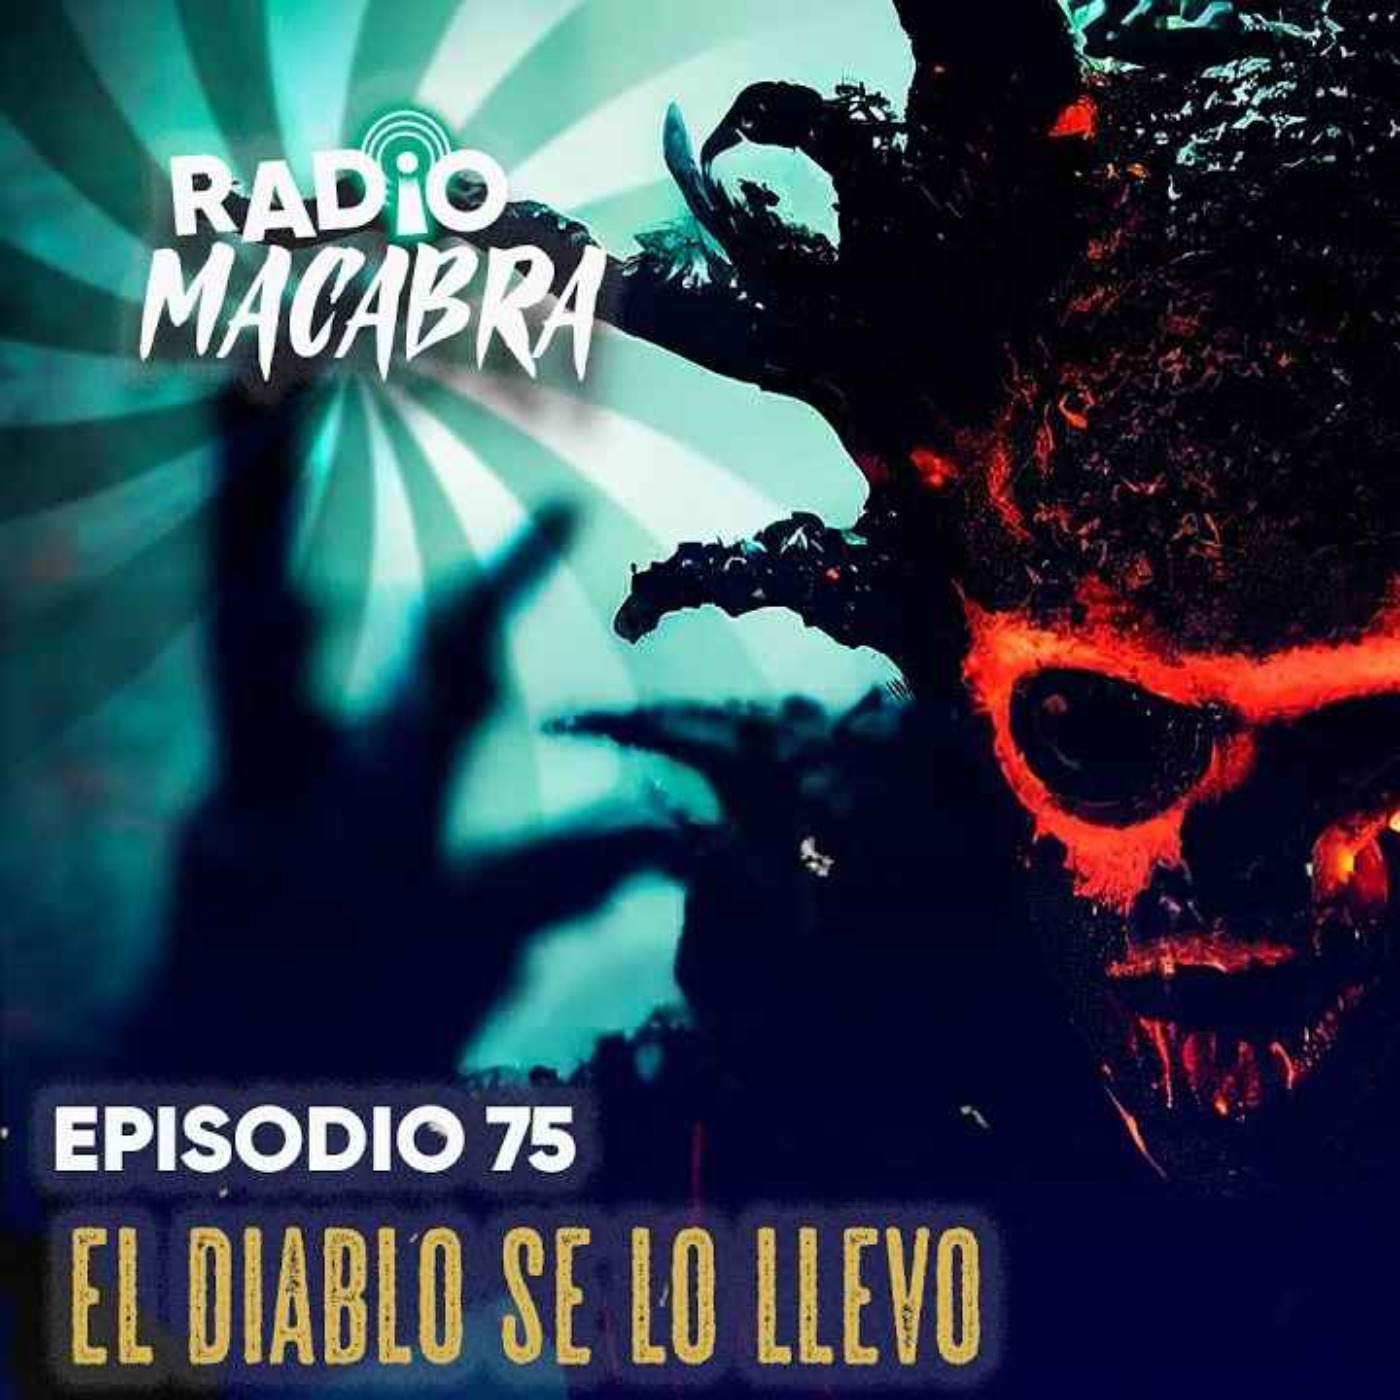 El Diablo Se Lo Llevo Radio Macabra 75 Relatos De Horror Historias De Terror On Acast 7937